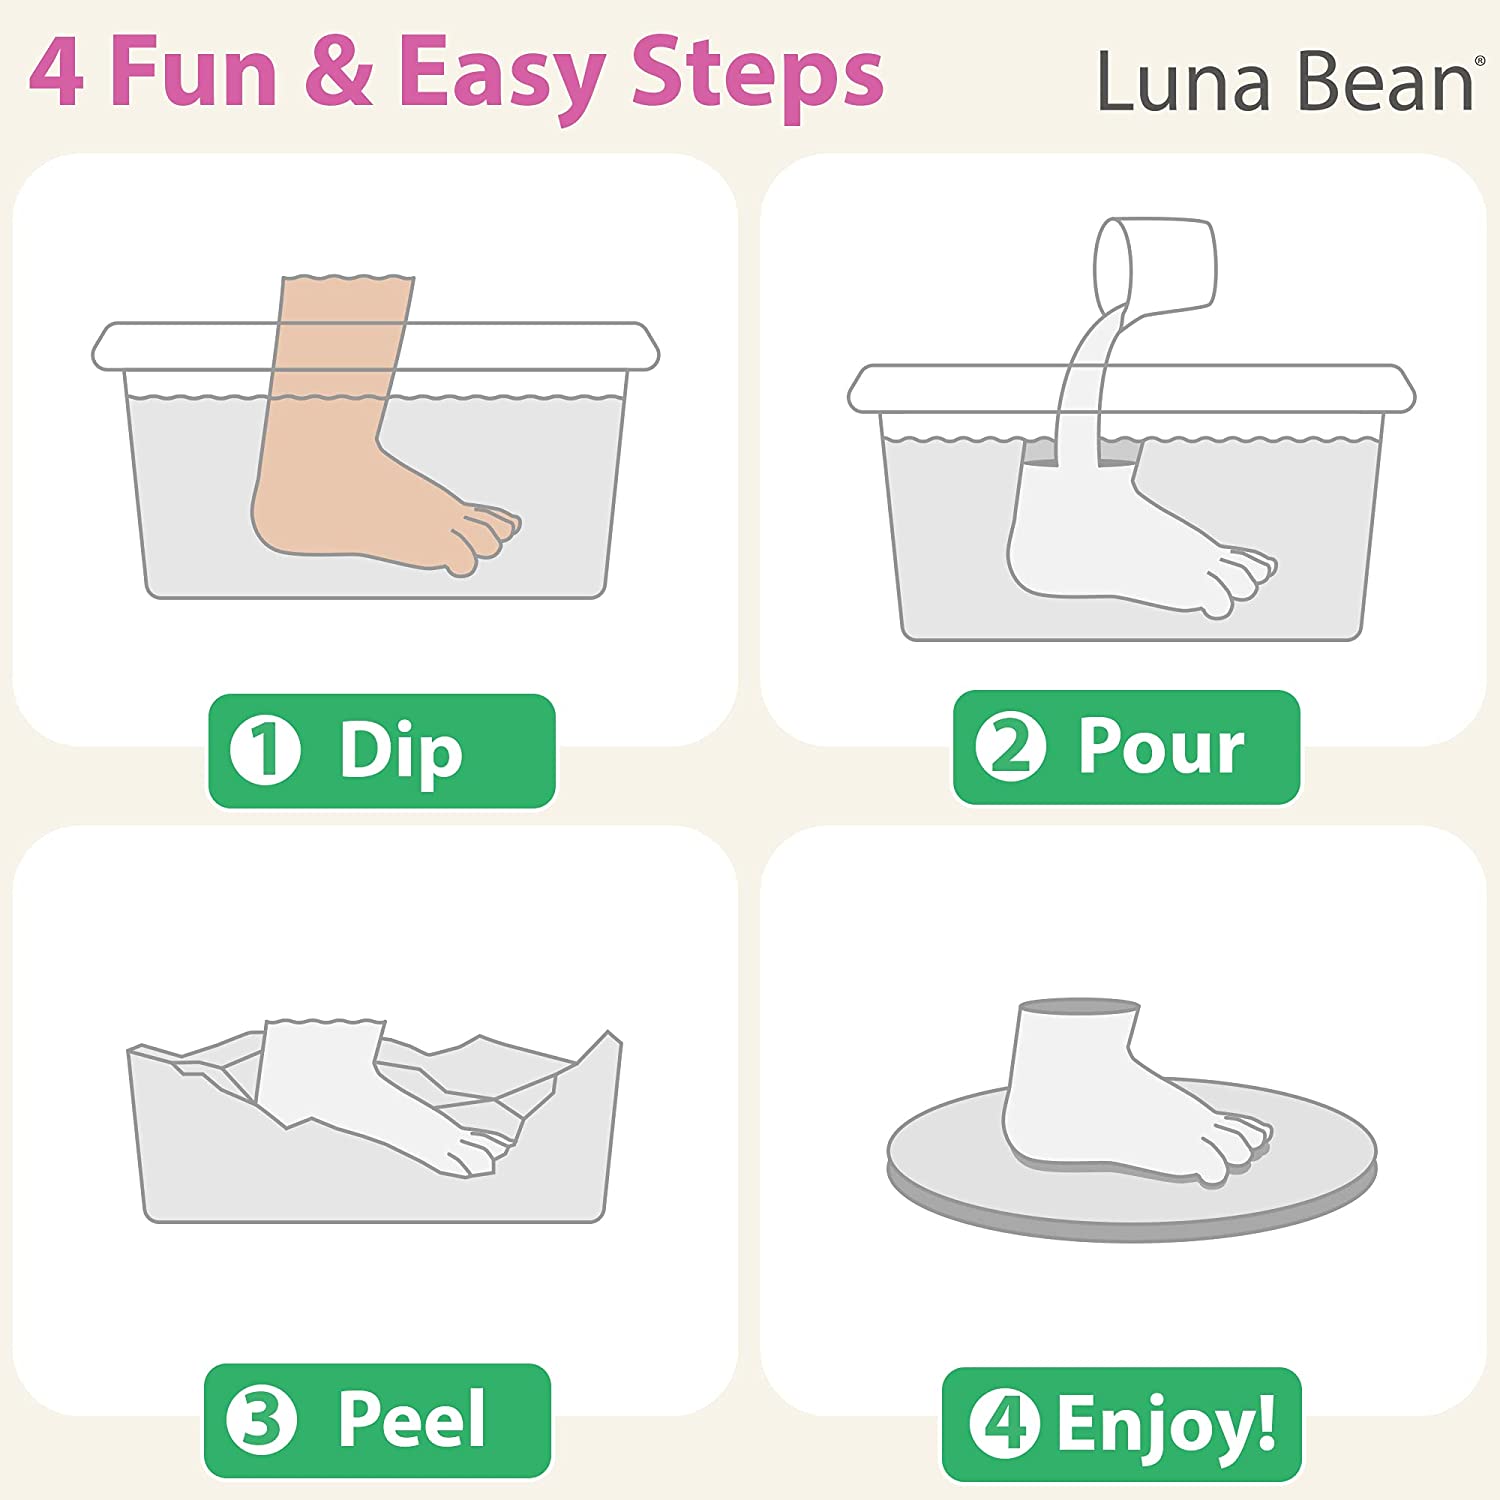 luna bean keepsake hand casting kit